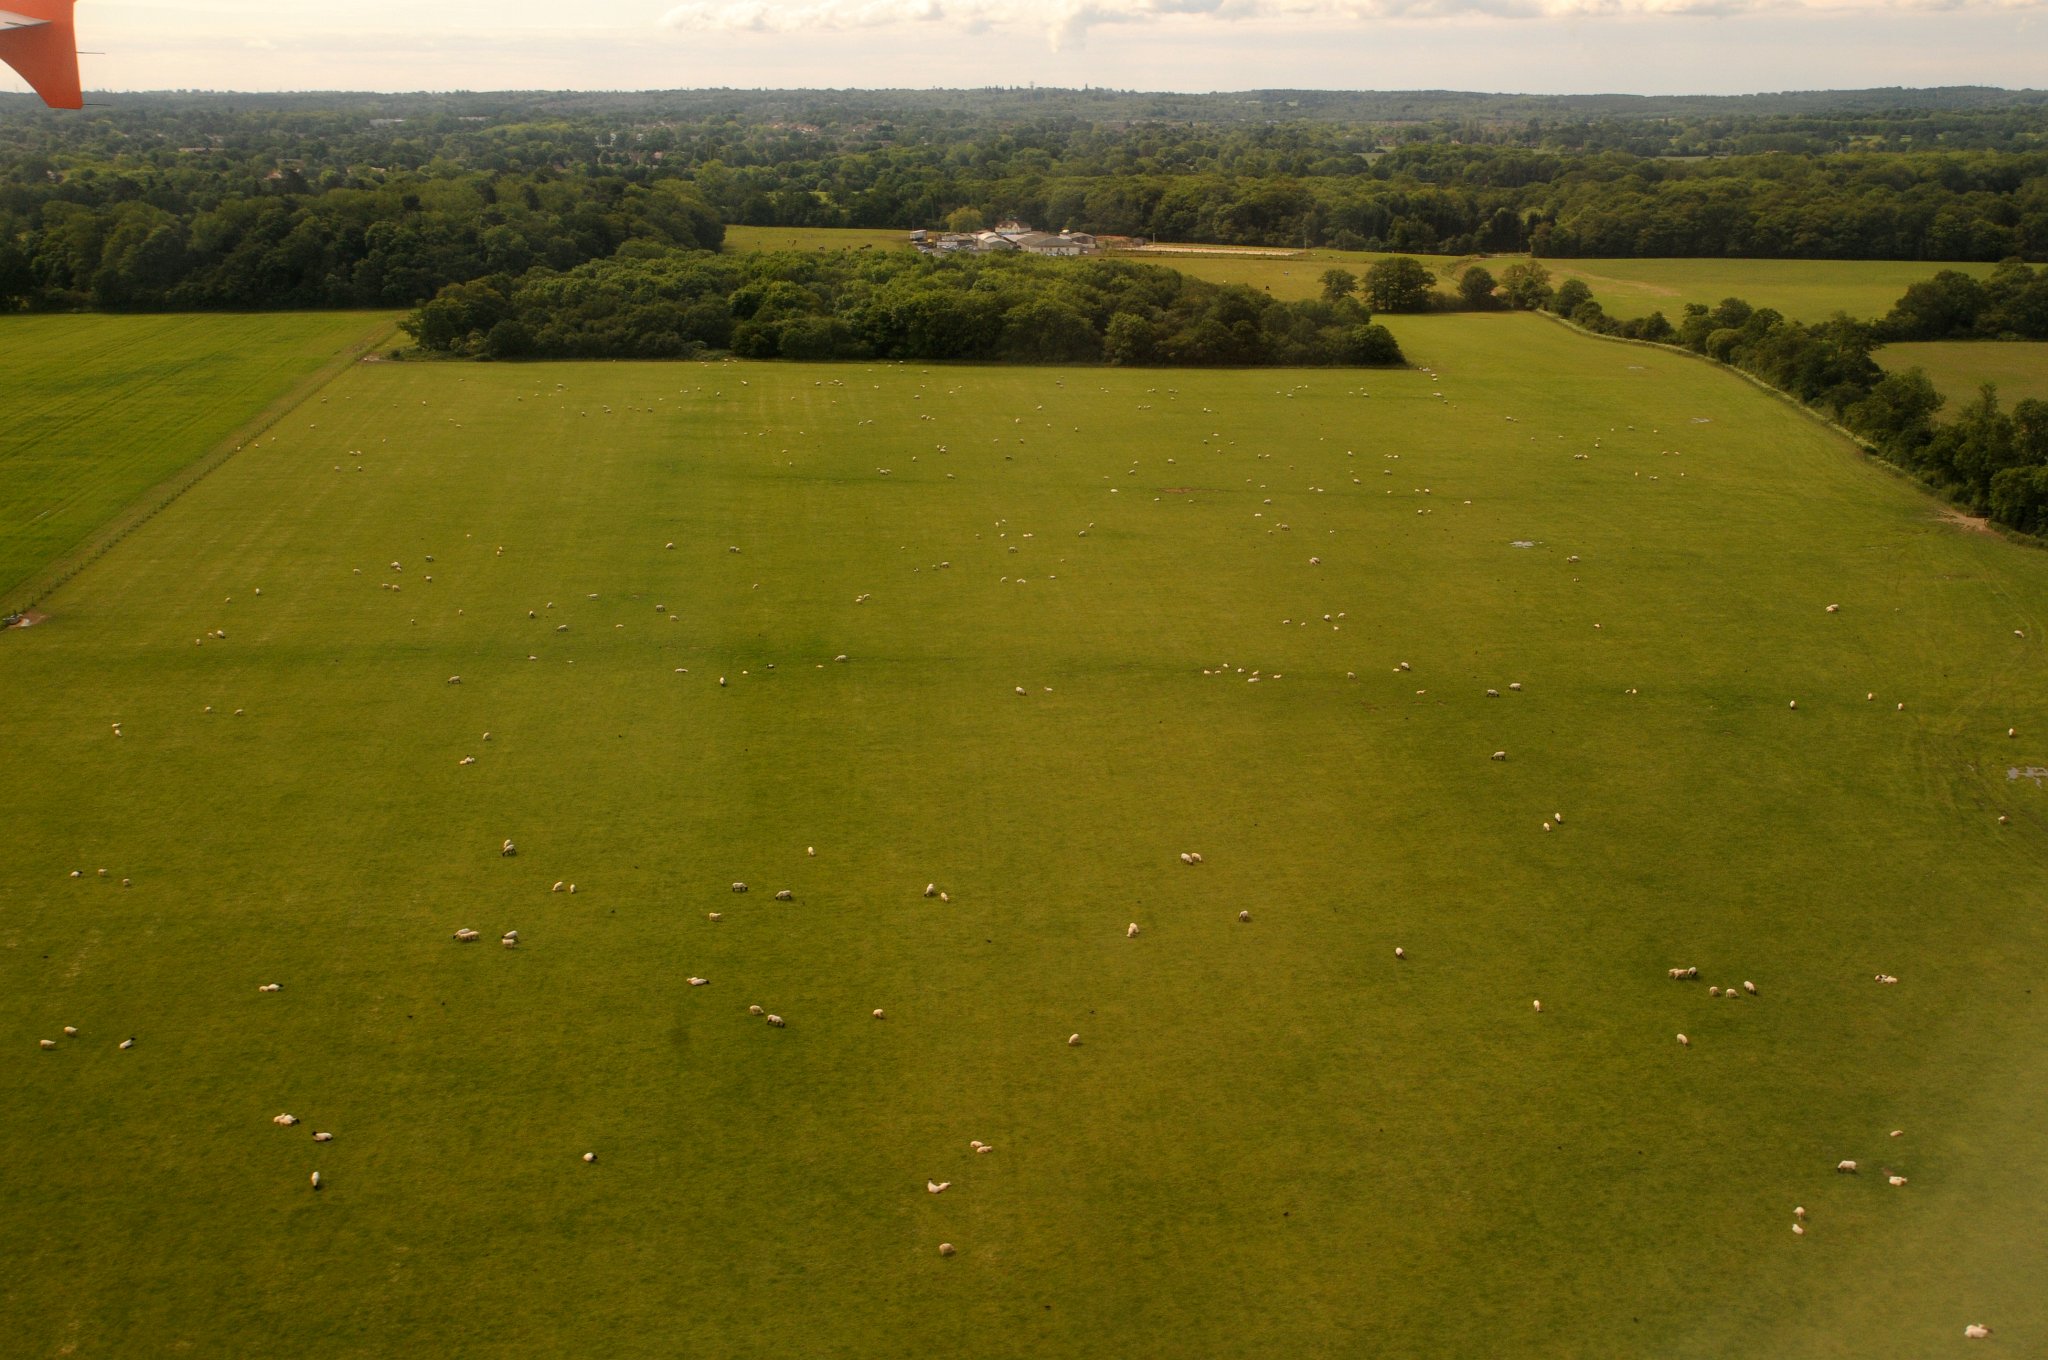 DSC_2727_2.jpg - Přistáváme a poblíž letiště vidíme stáda ovcí.